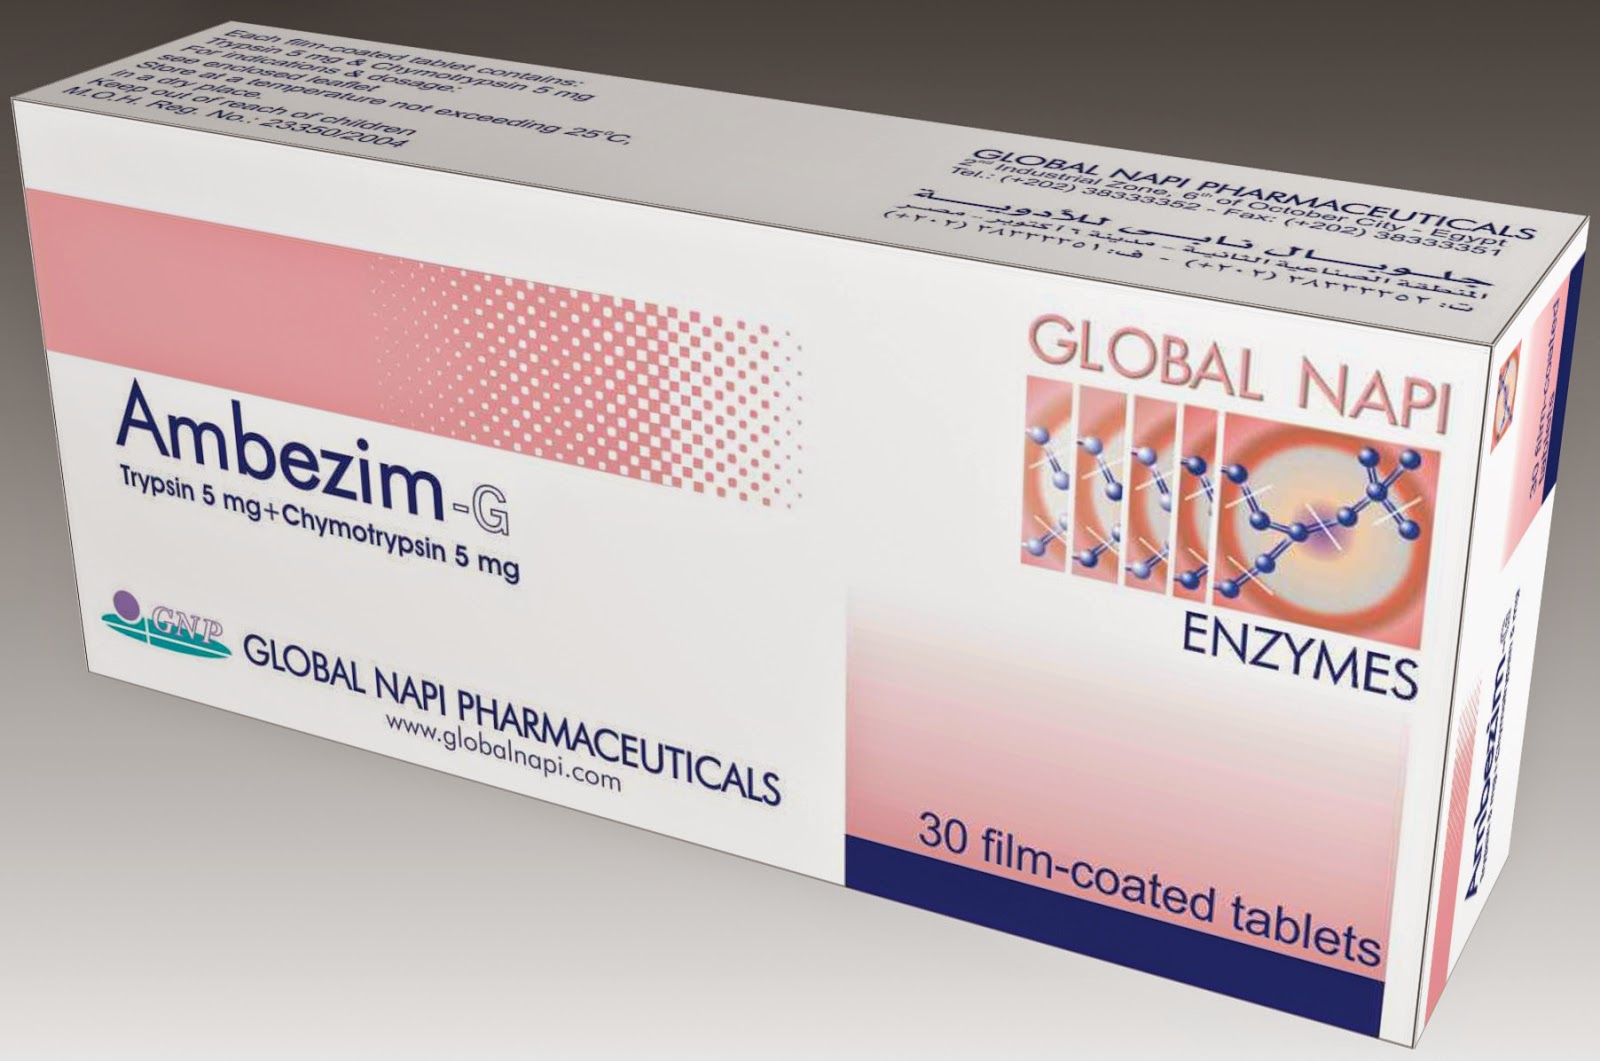 دواء امبيزيم ج Ambezim-G للوقاية والعلاج من التورمات والتجمعات الدموية